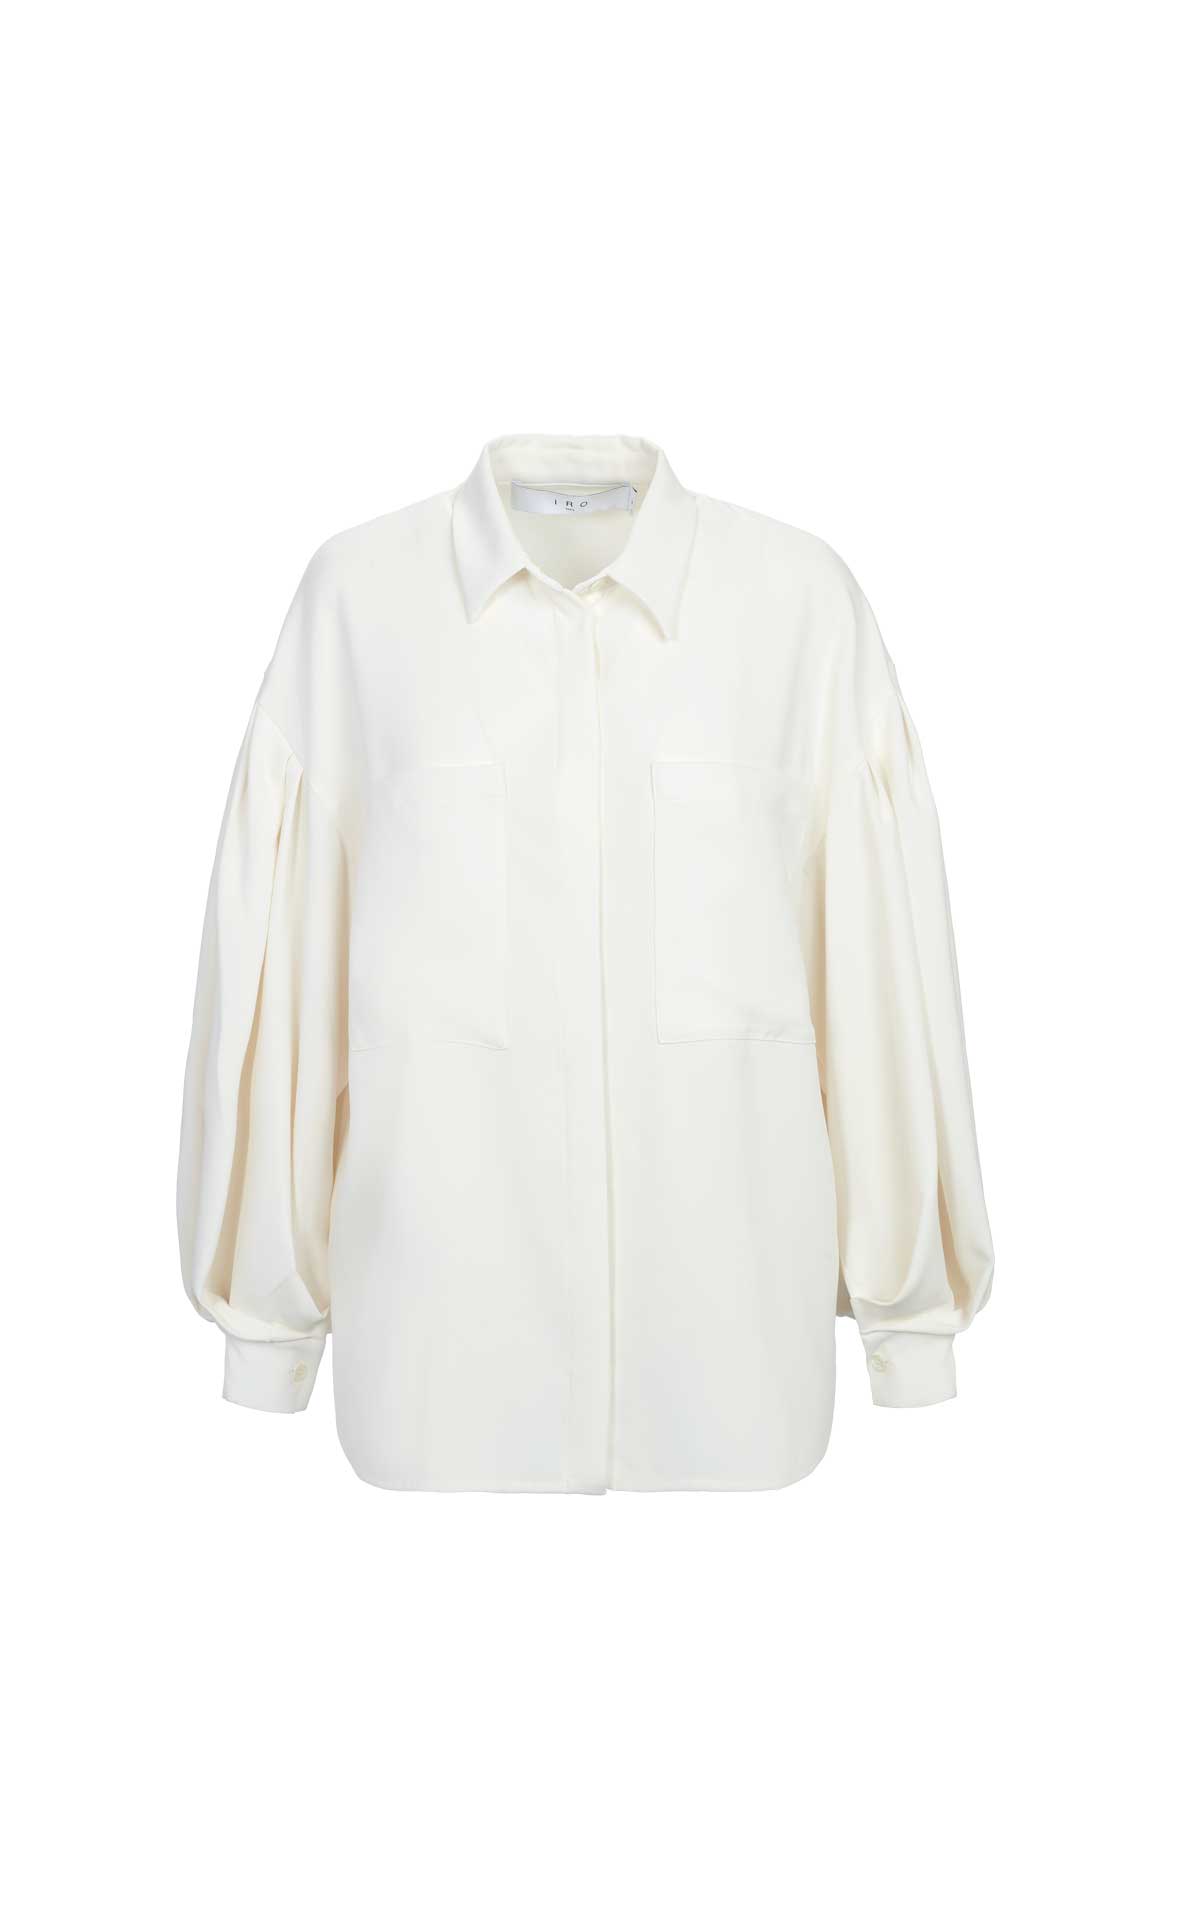 A white blouse IRO Paris